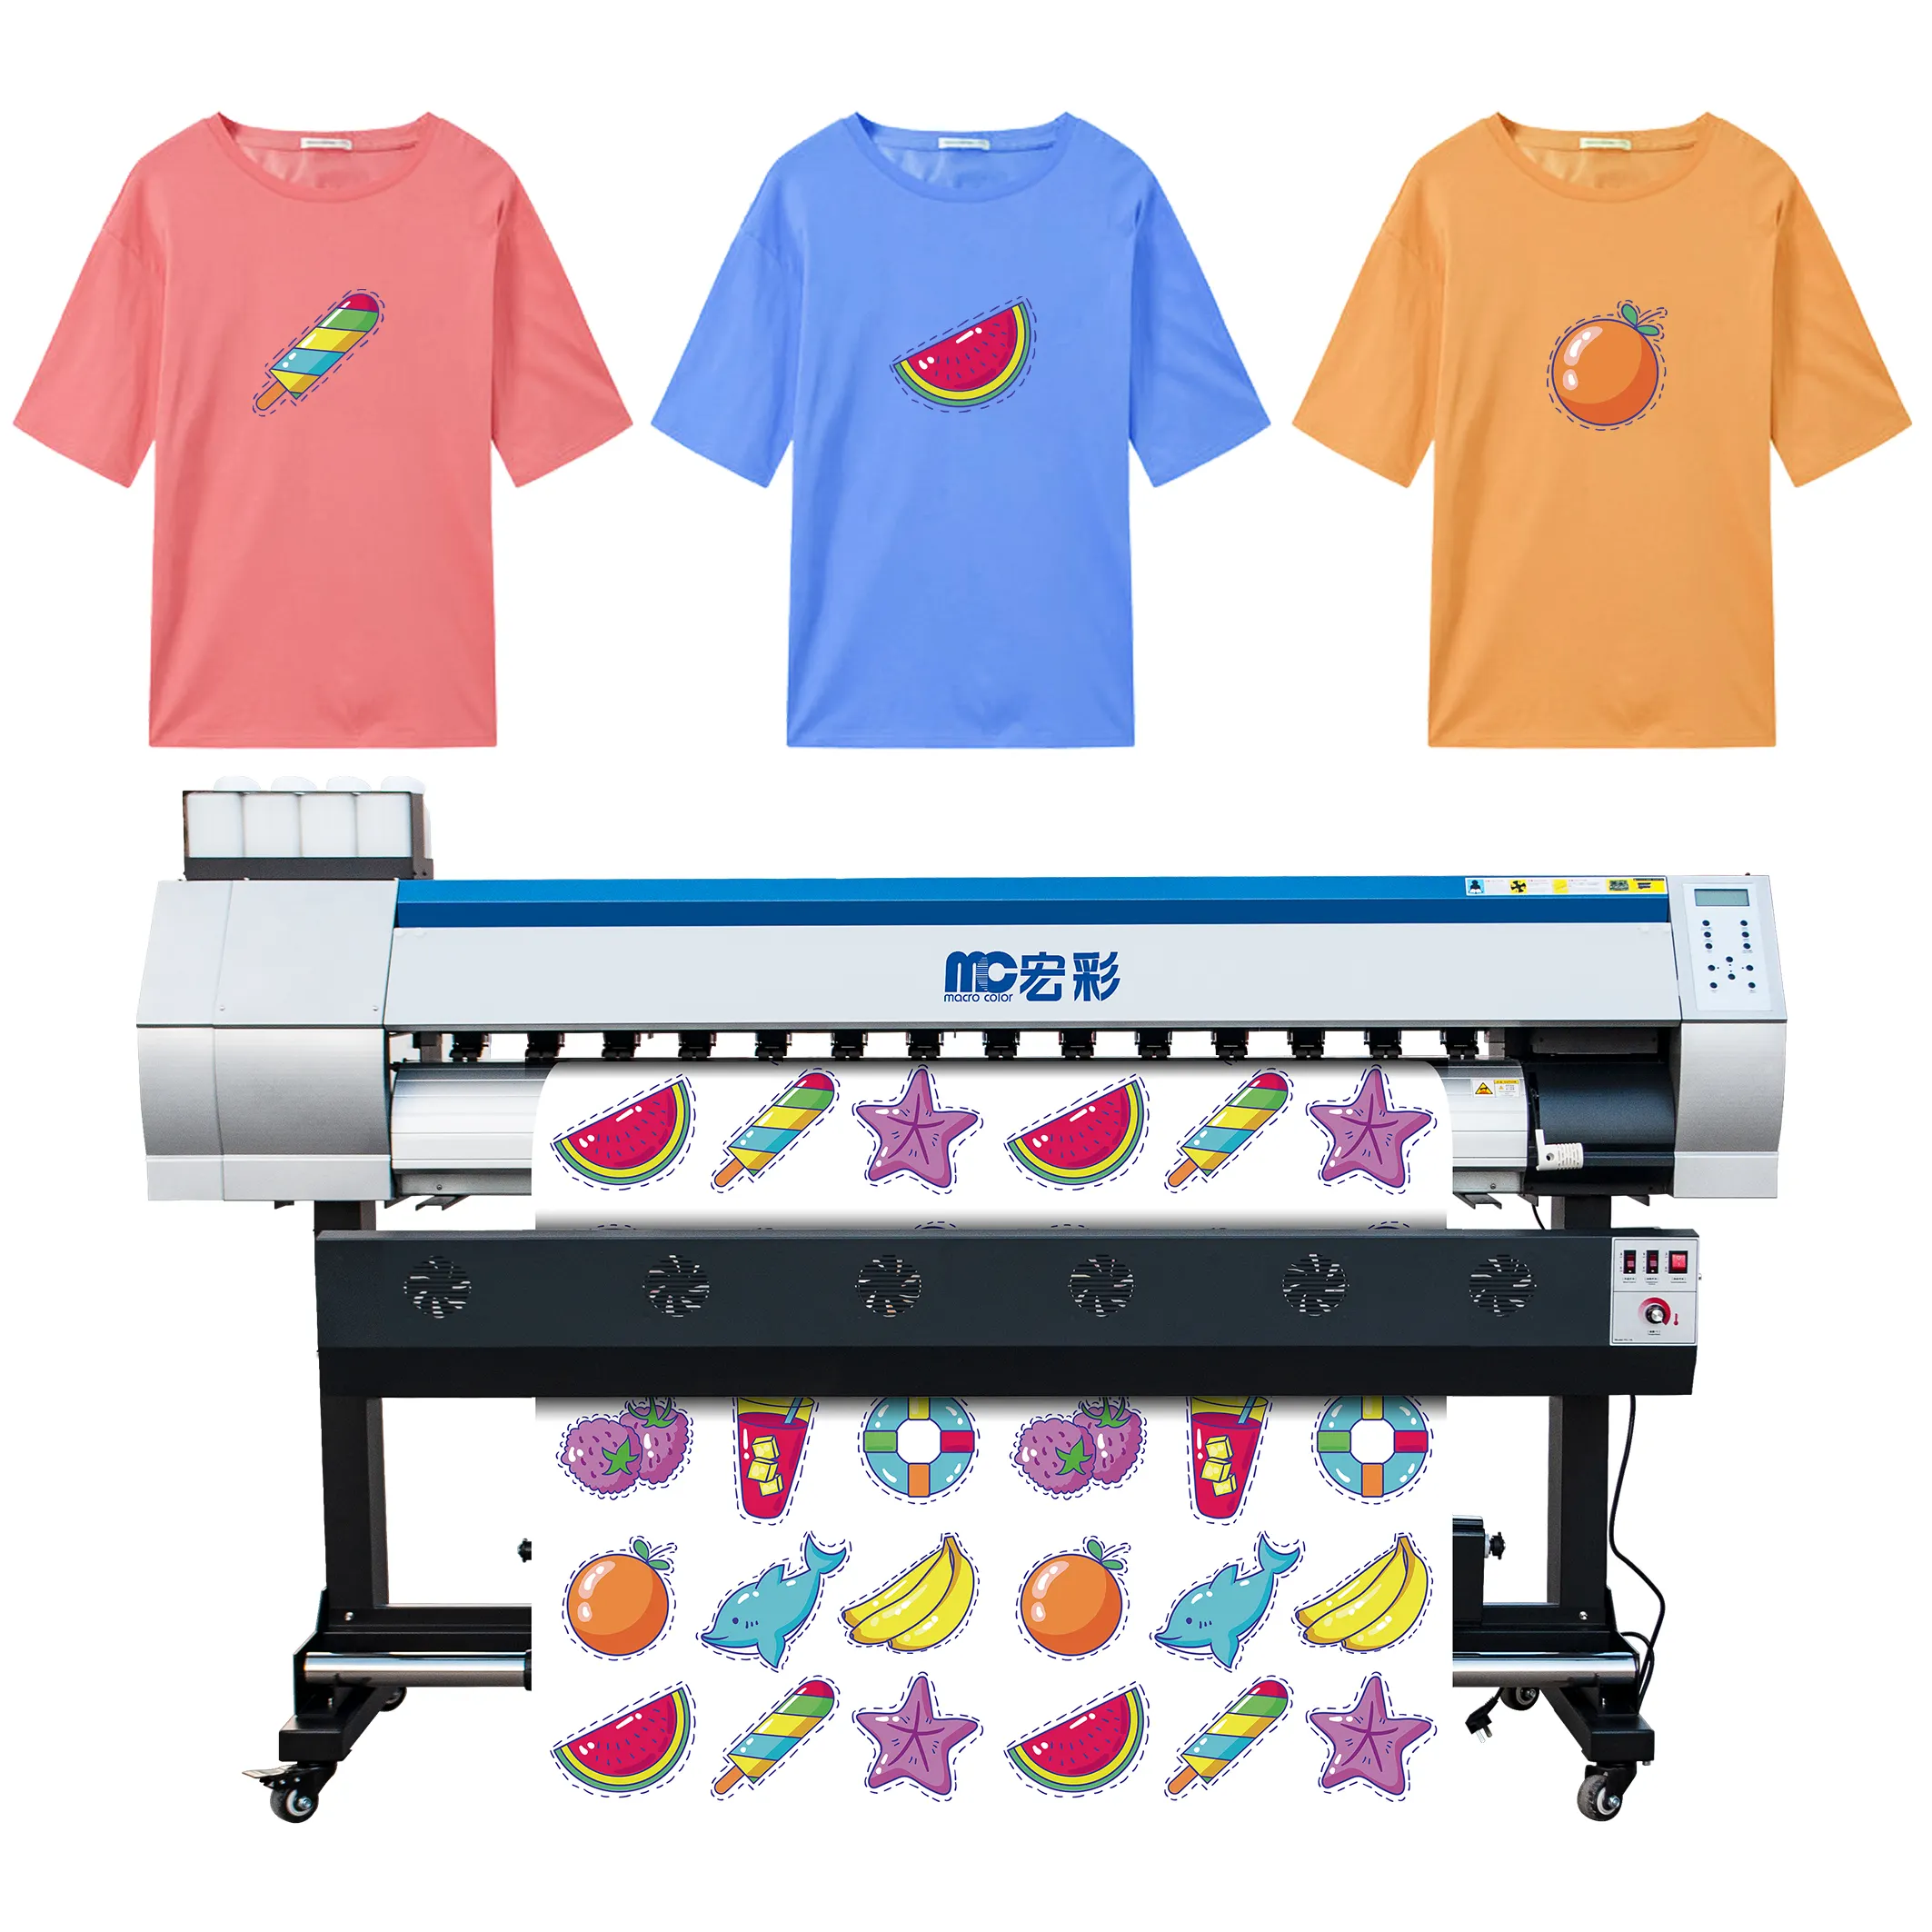 Xp600/1.8/i3200 impressora têxtil, camiseta de futebol, máquina de impressão, 4720 m